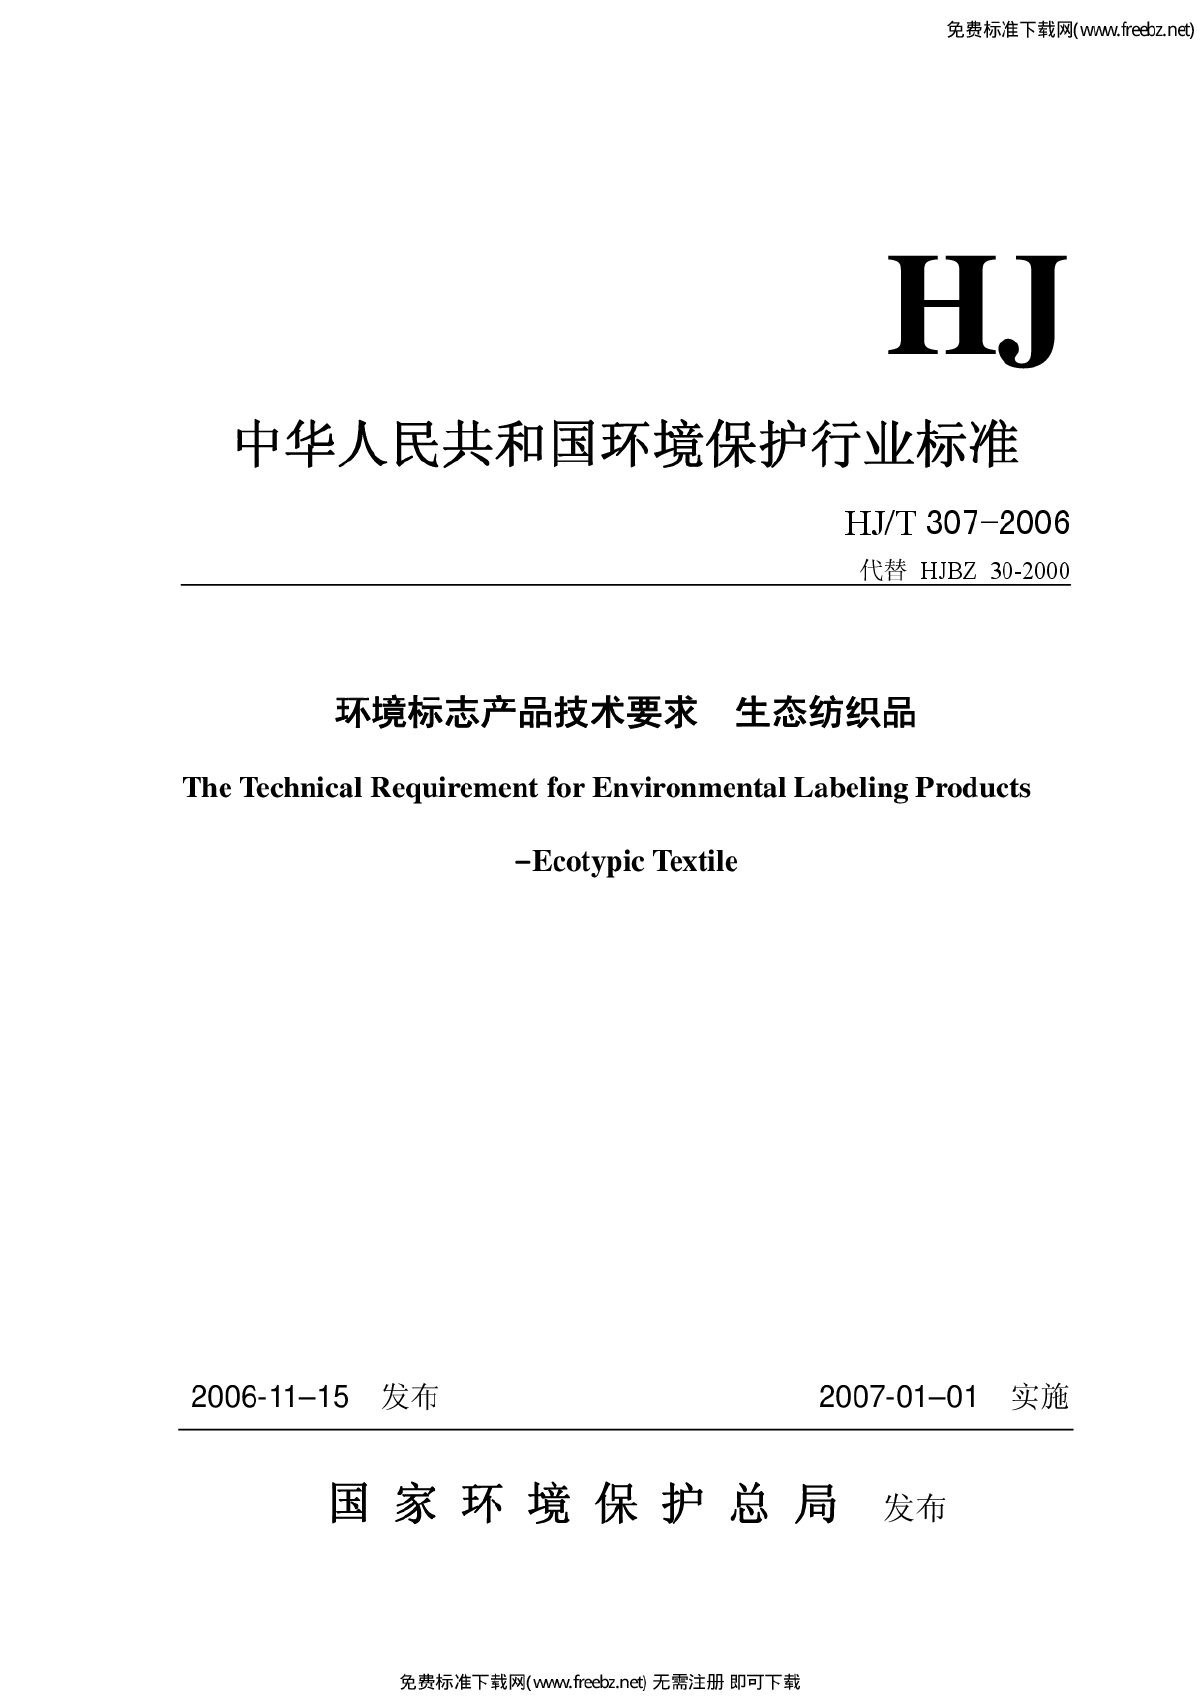 HJ-T 307-2006 环境标志产品技术要求 生态纺织品